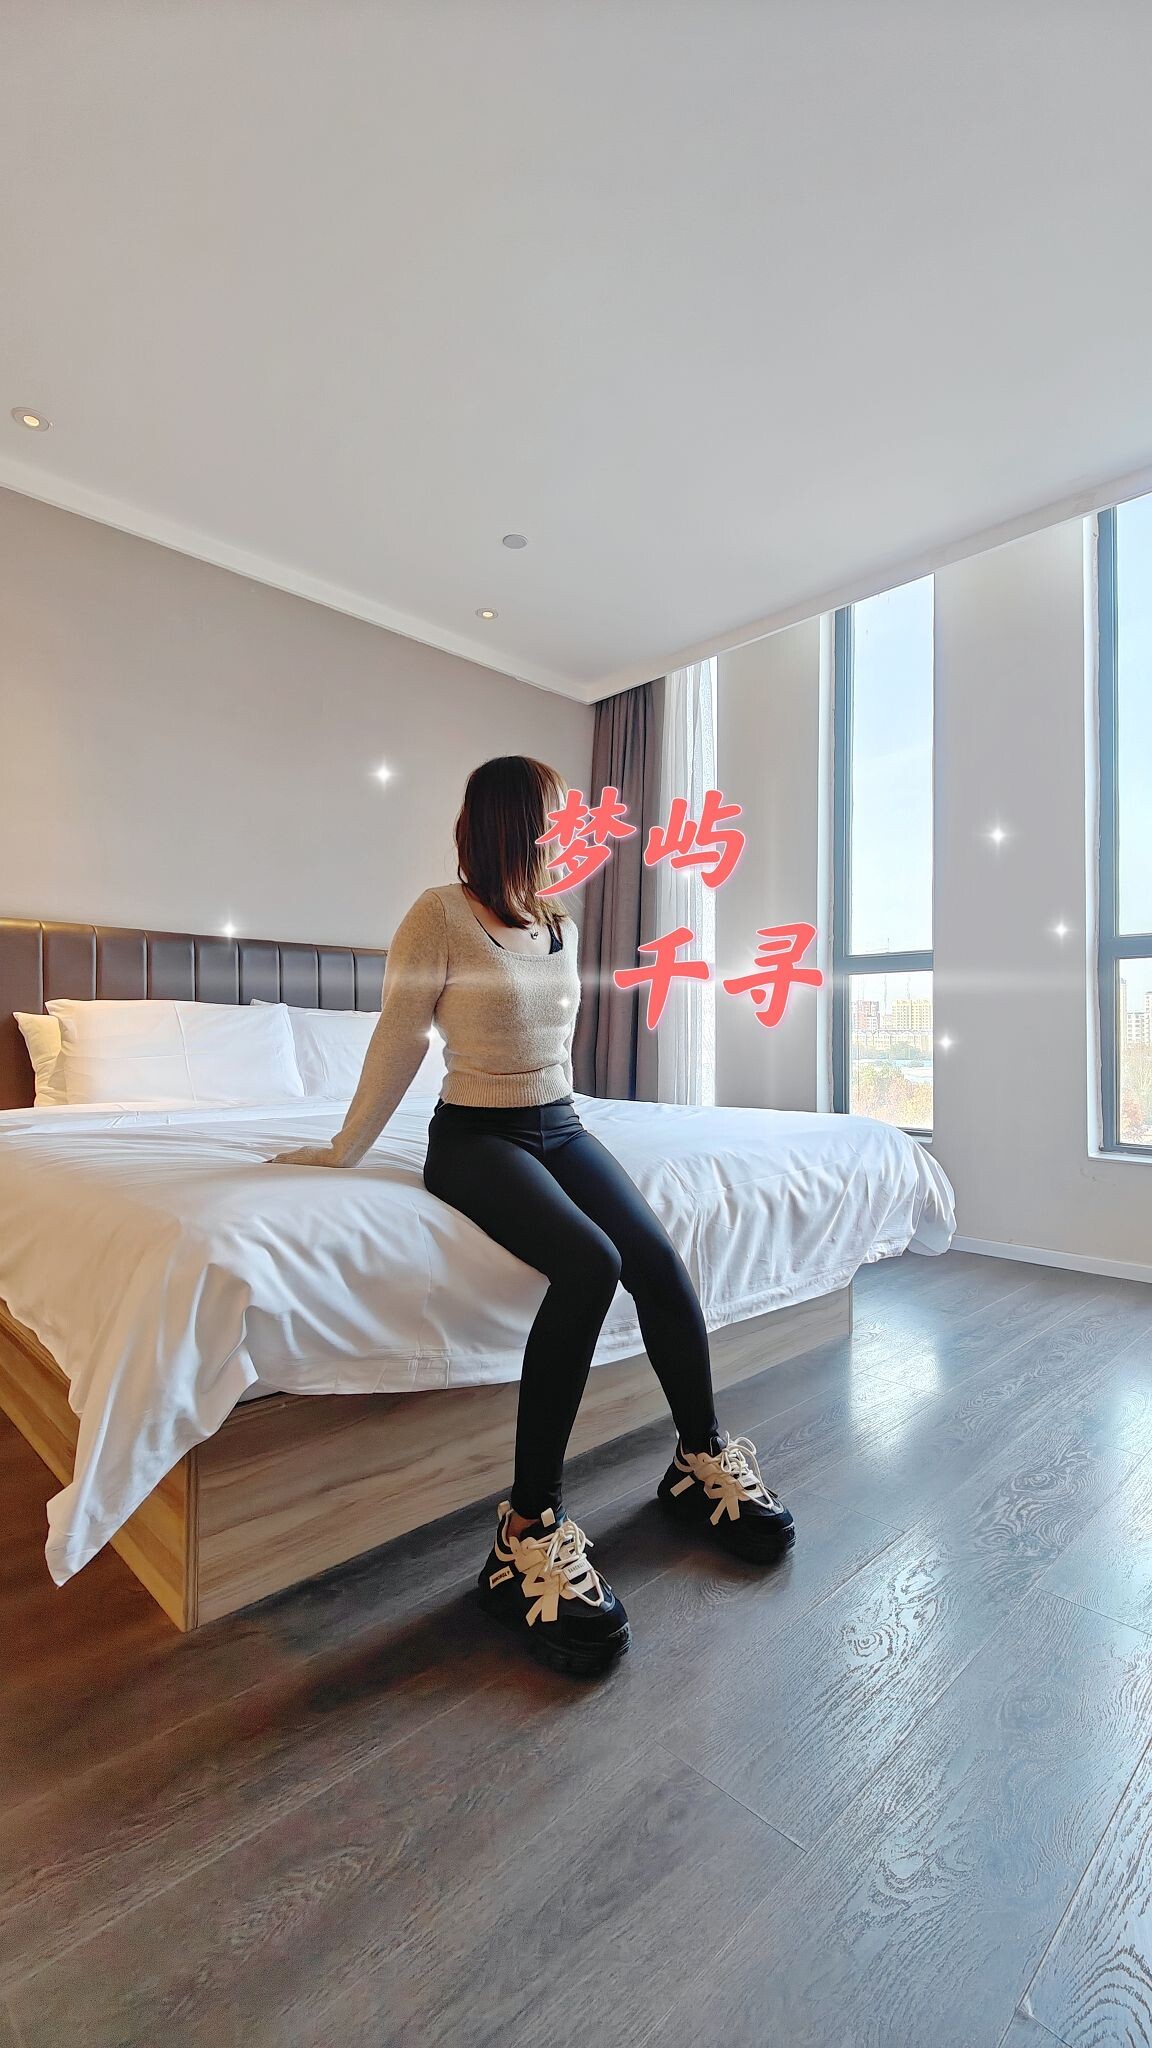 [ต้นฉบับ Mengyu Qianxun] ในฉบับที่สามภรรยาตัวน้อยเซ็กซี่ของ Kuris ไปที่โรงแรมเพื่อสัมผัสประสบการณ์ทางเพศประเภทต่างๆ ถุงน่อง jiojio นั้นโลภมากการด้งปากเล็ก ๆ ที่อบอุ่นการตรวจสอบท่าทาง [31P]